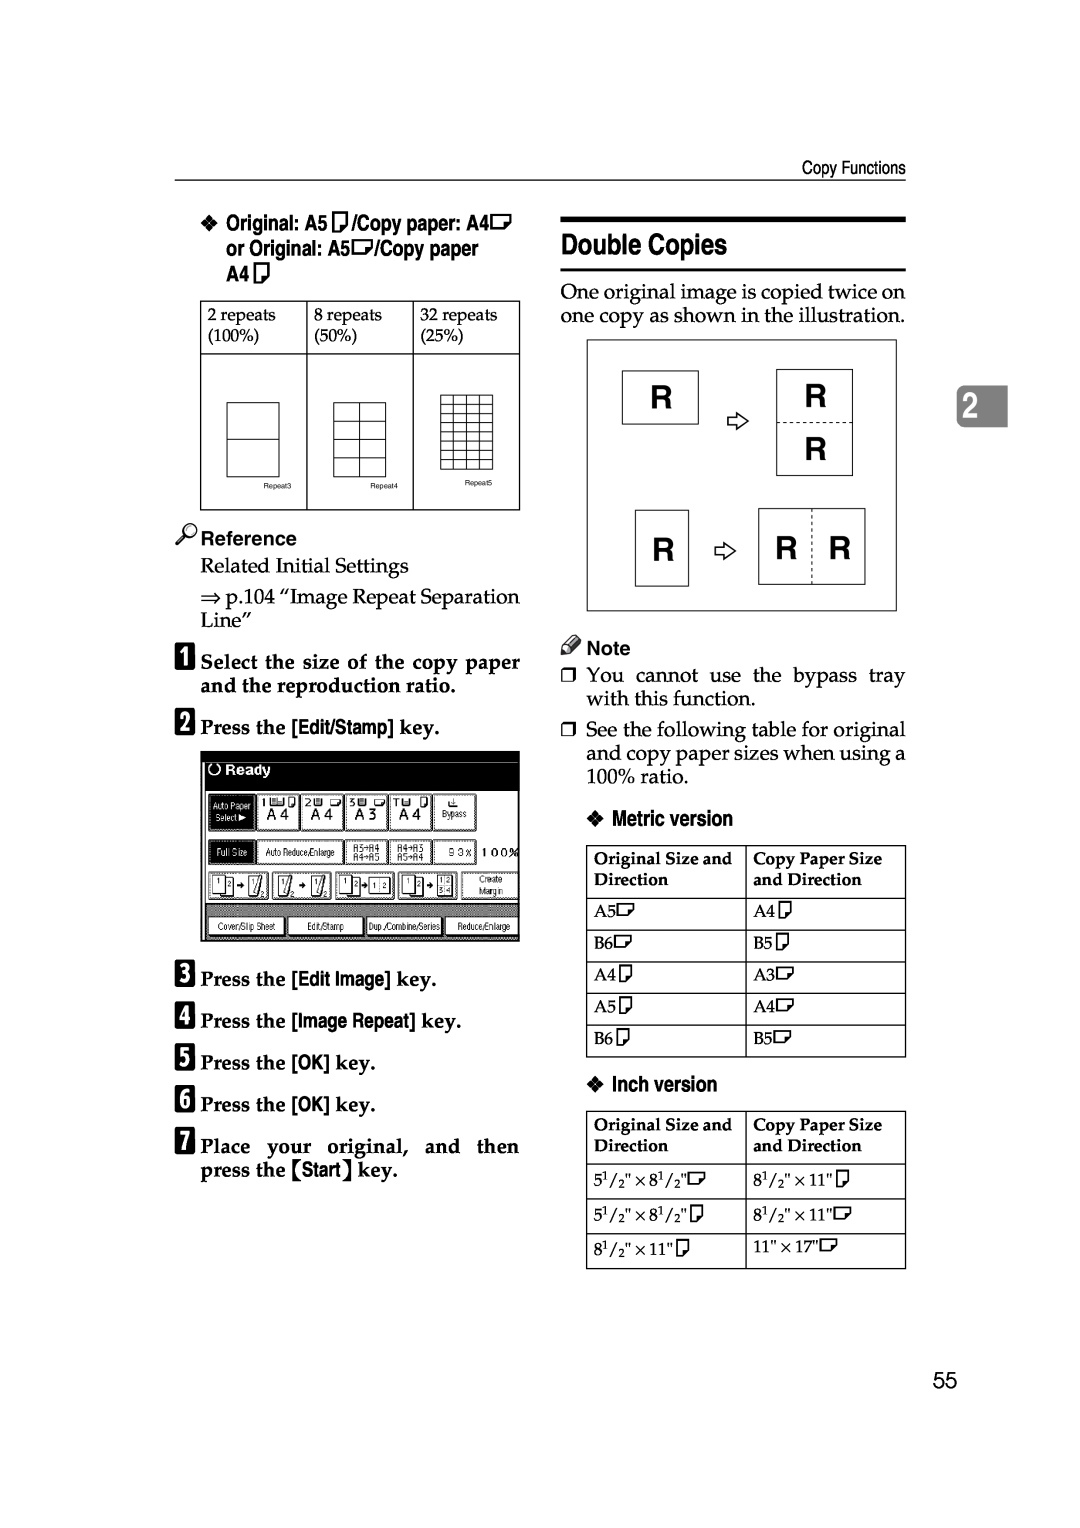 Ricoh IS 2060 Double Copies, Original A5K/Copy paper A4L or Original A5L/Copy paper A4K, Metric version, Inch version 